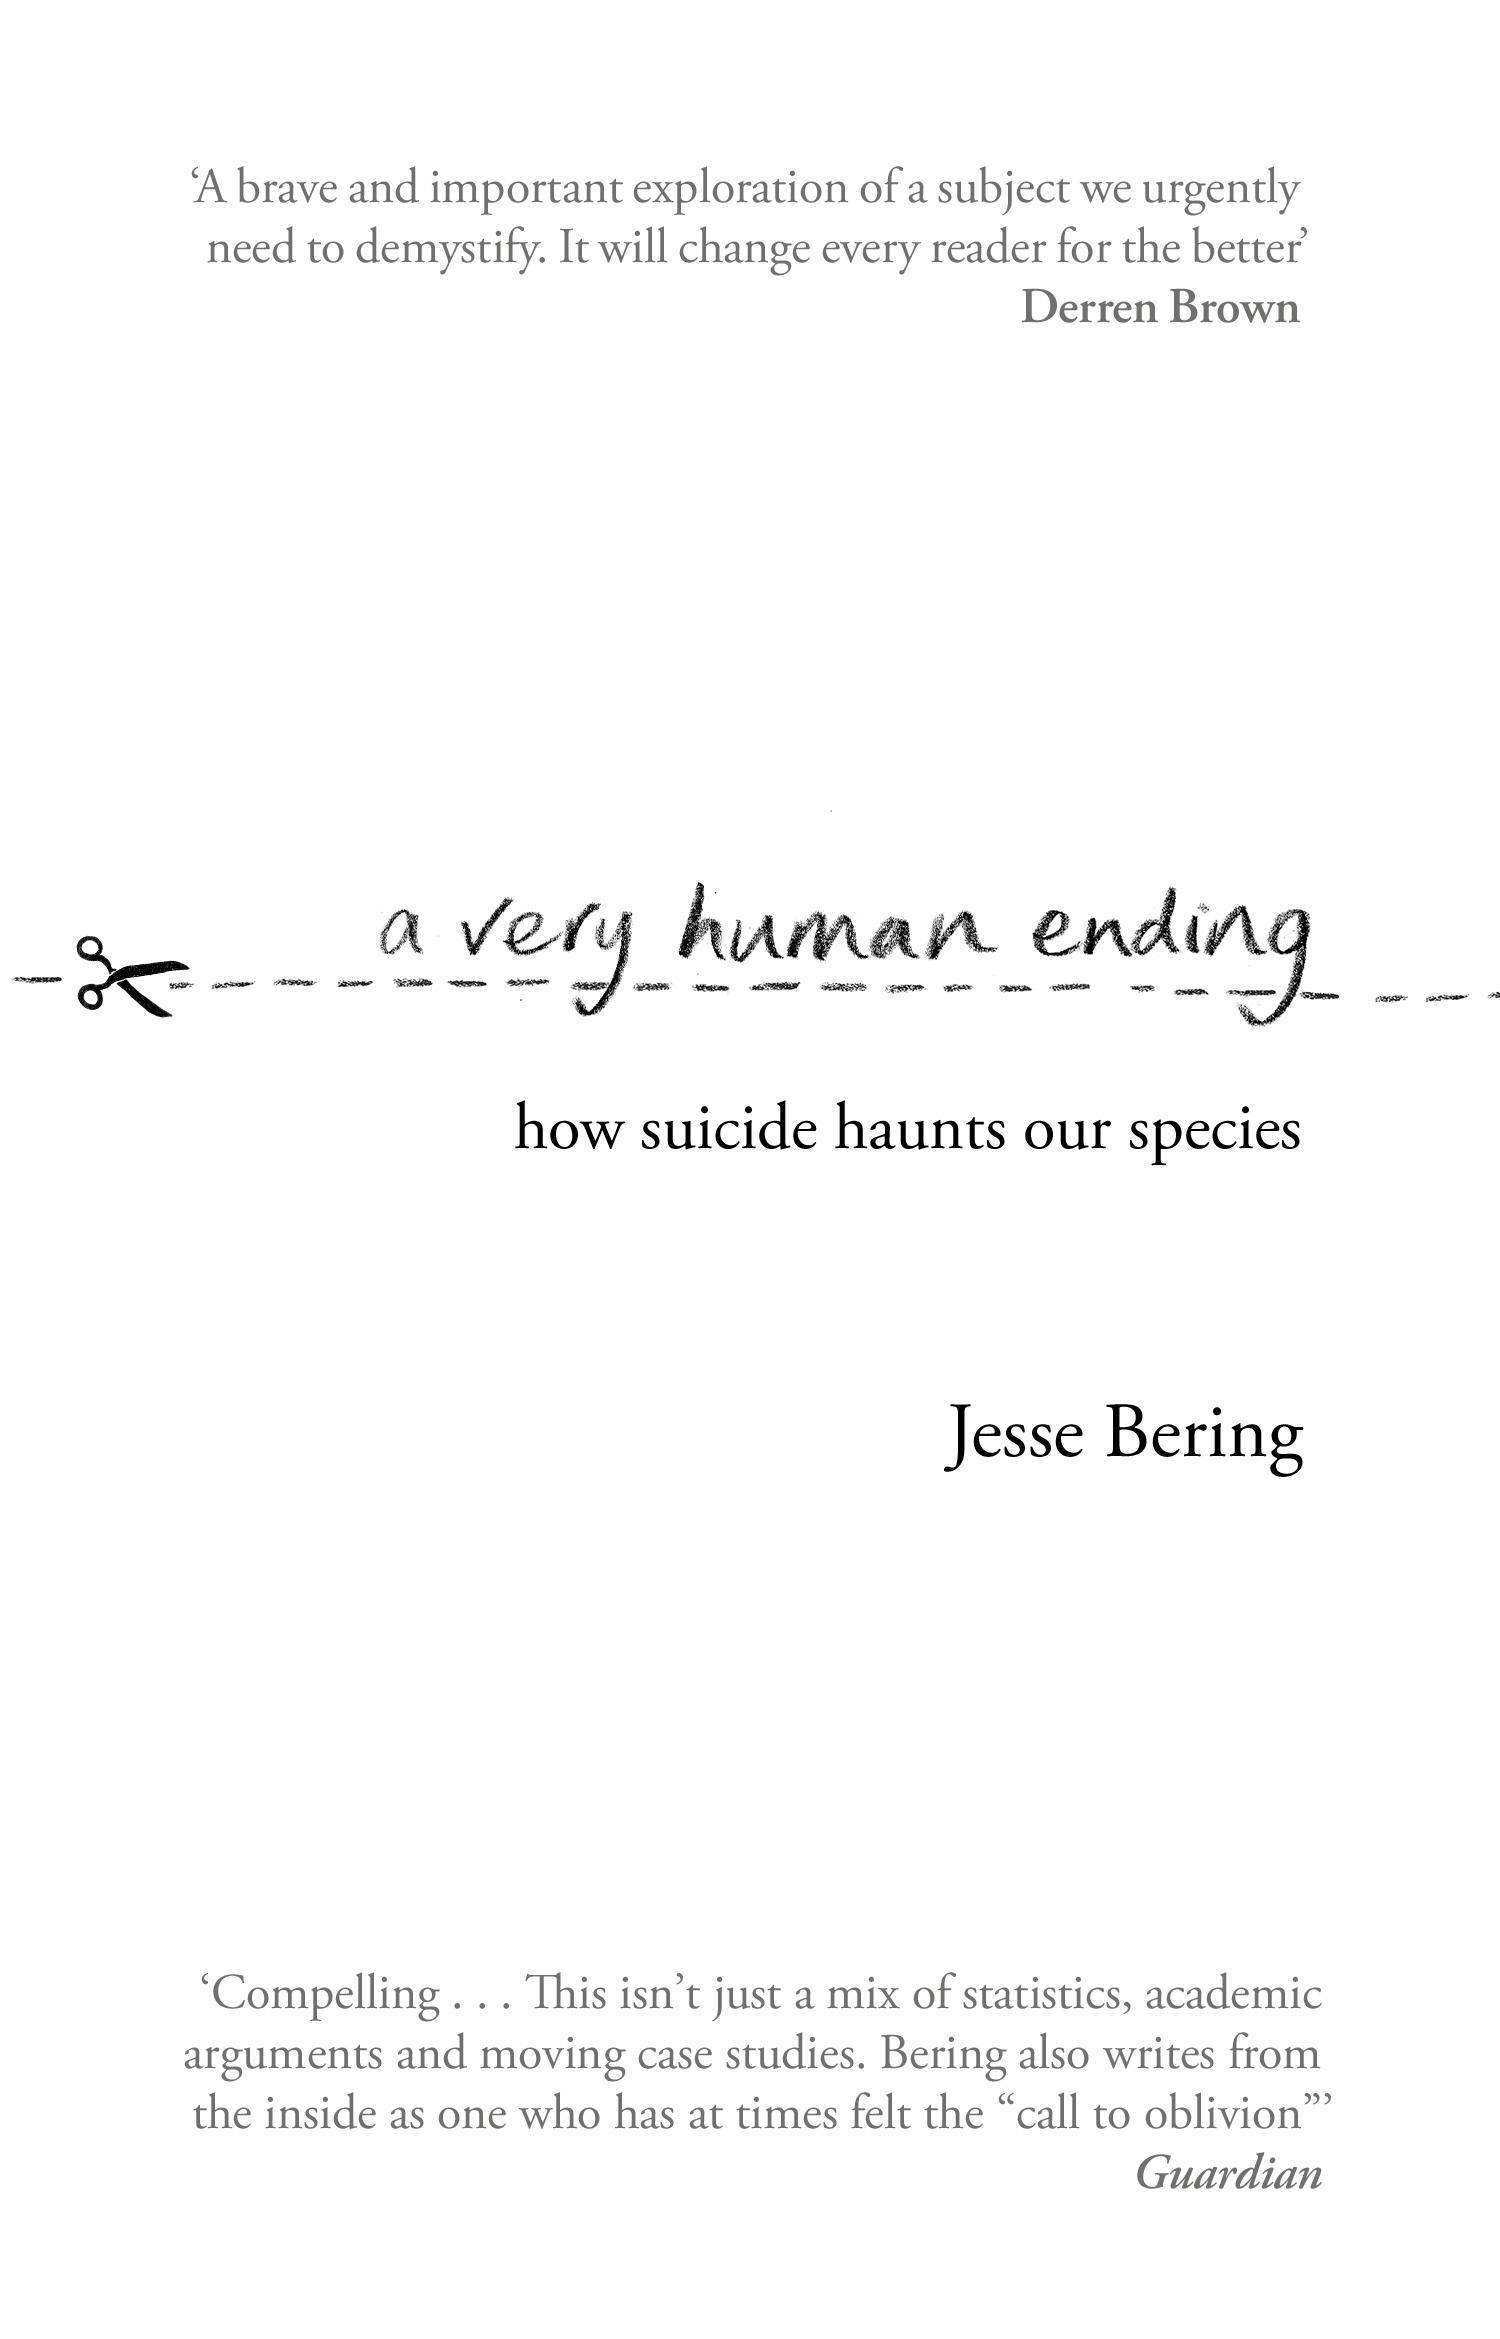 Very Human Ending - Jesse Bering